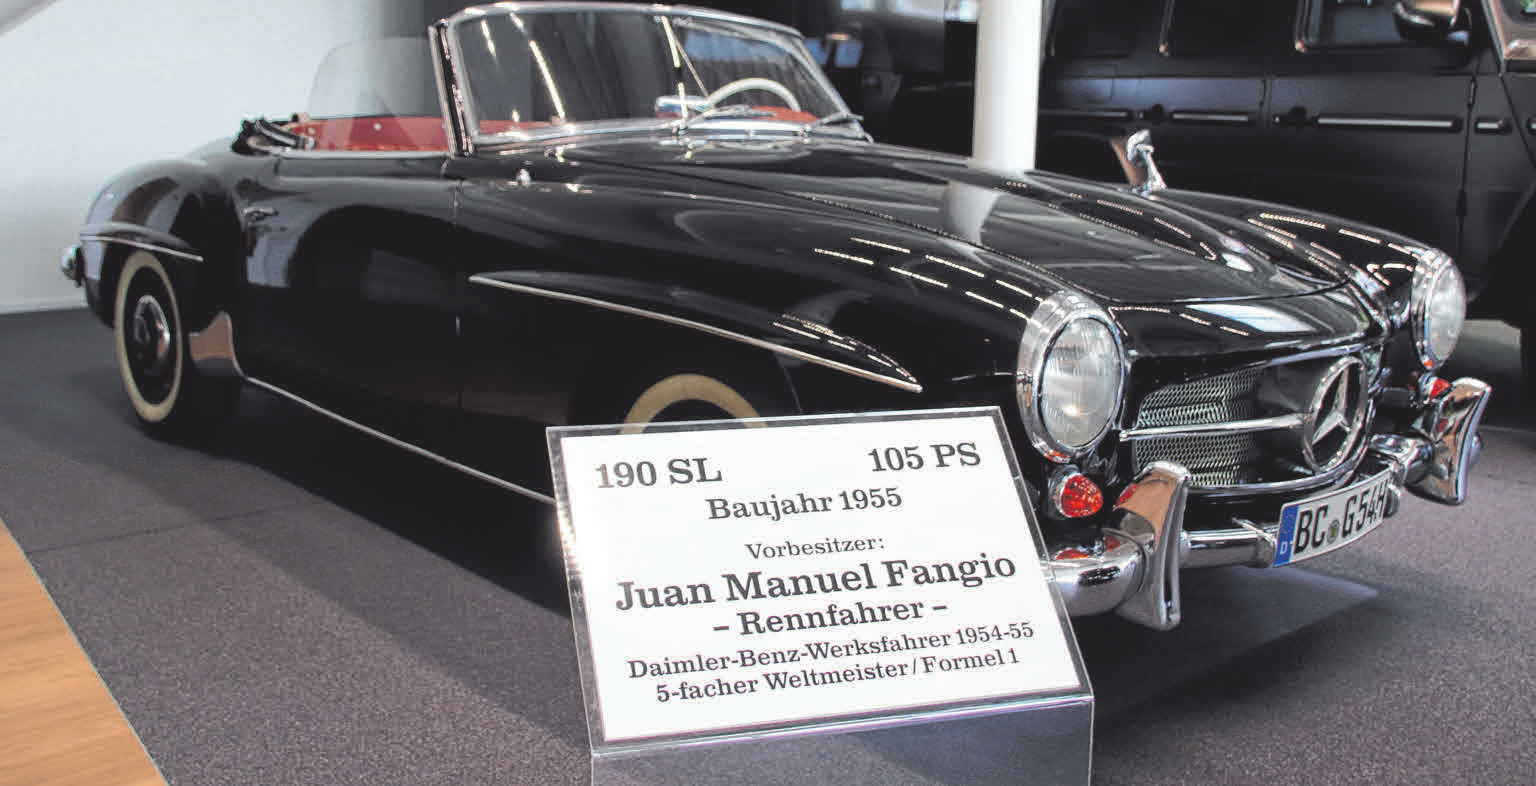 Motorsportenthusiasten werden den Vorbesitzer dieses 190 SL kennen: Der 5-fache Formel 1 Weltmeister Juan Manuel Fangio.